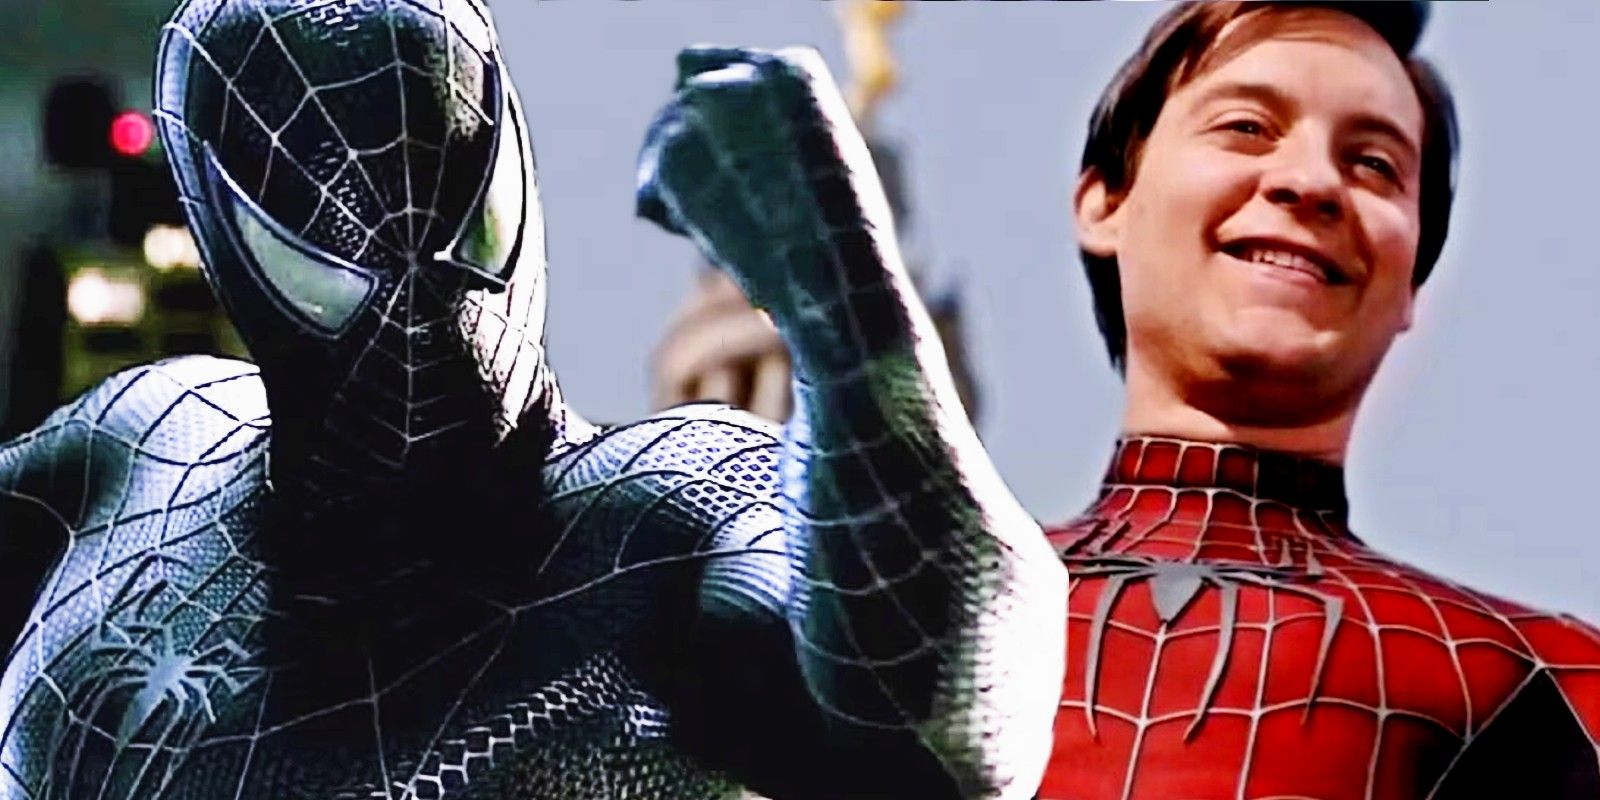 托比·马奎尔的《蜘蛛侠3》在争议上映17年后终获应有赞誉